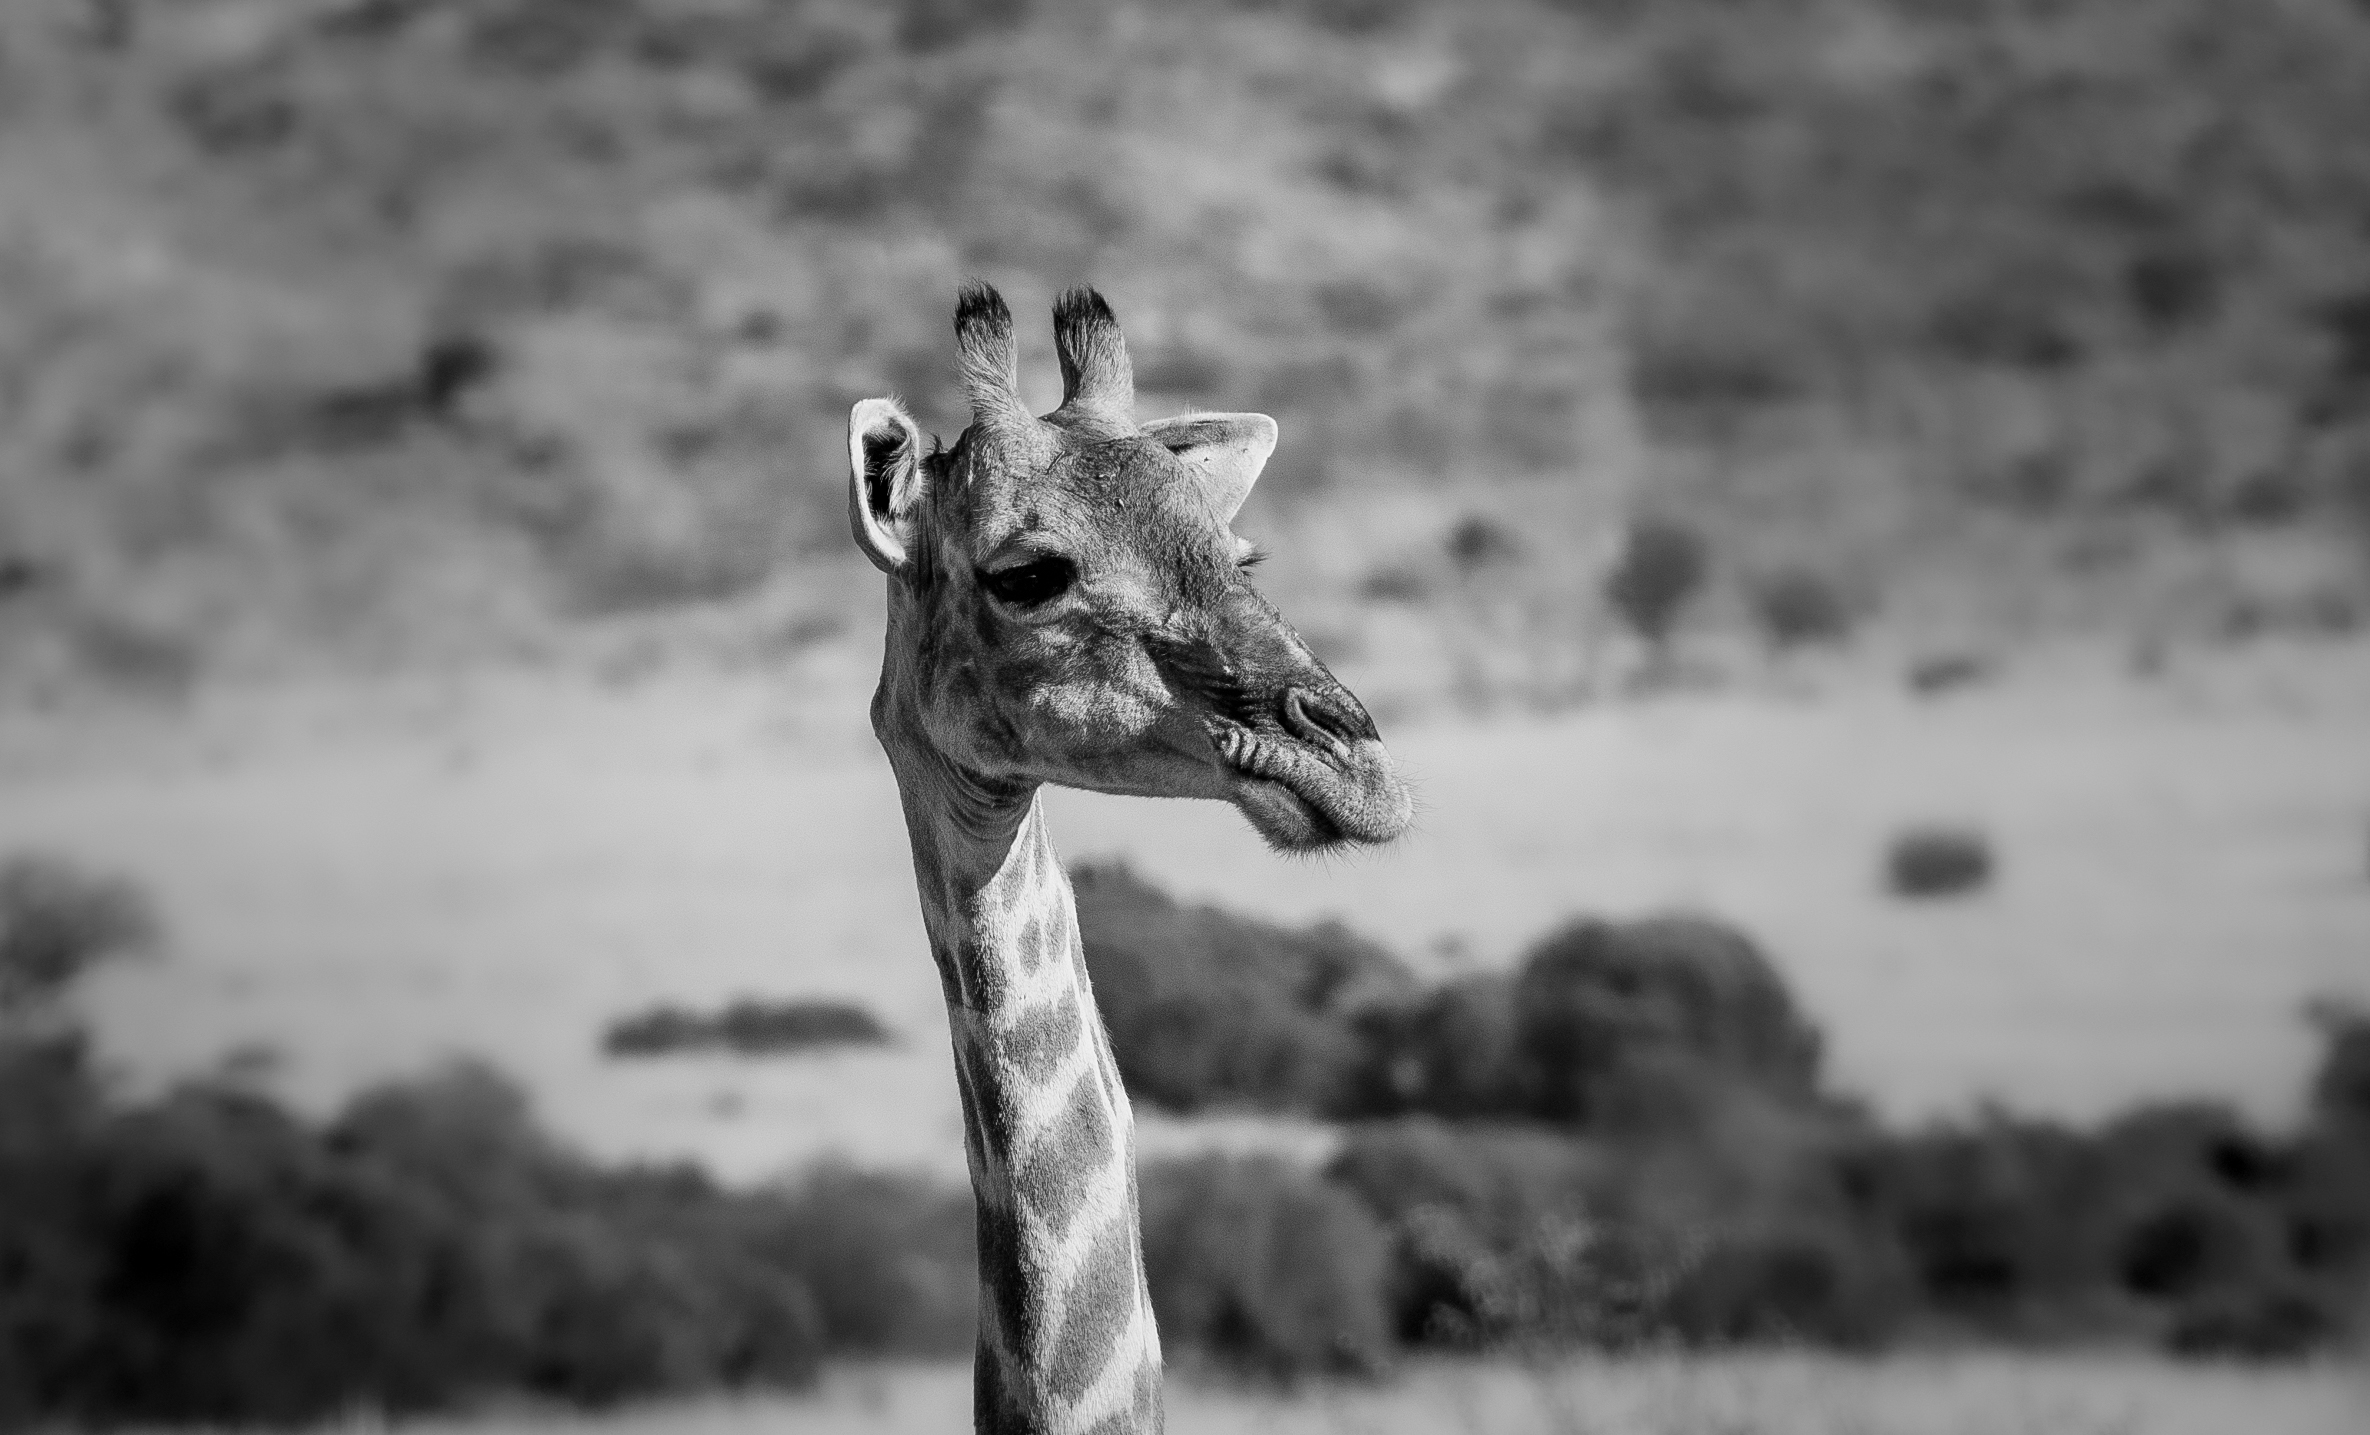 giraffe's face